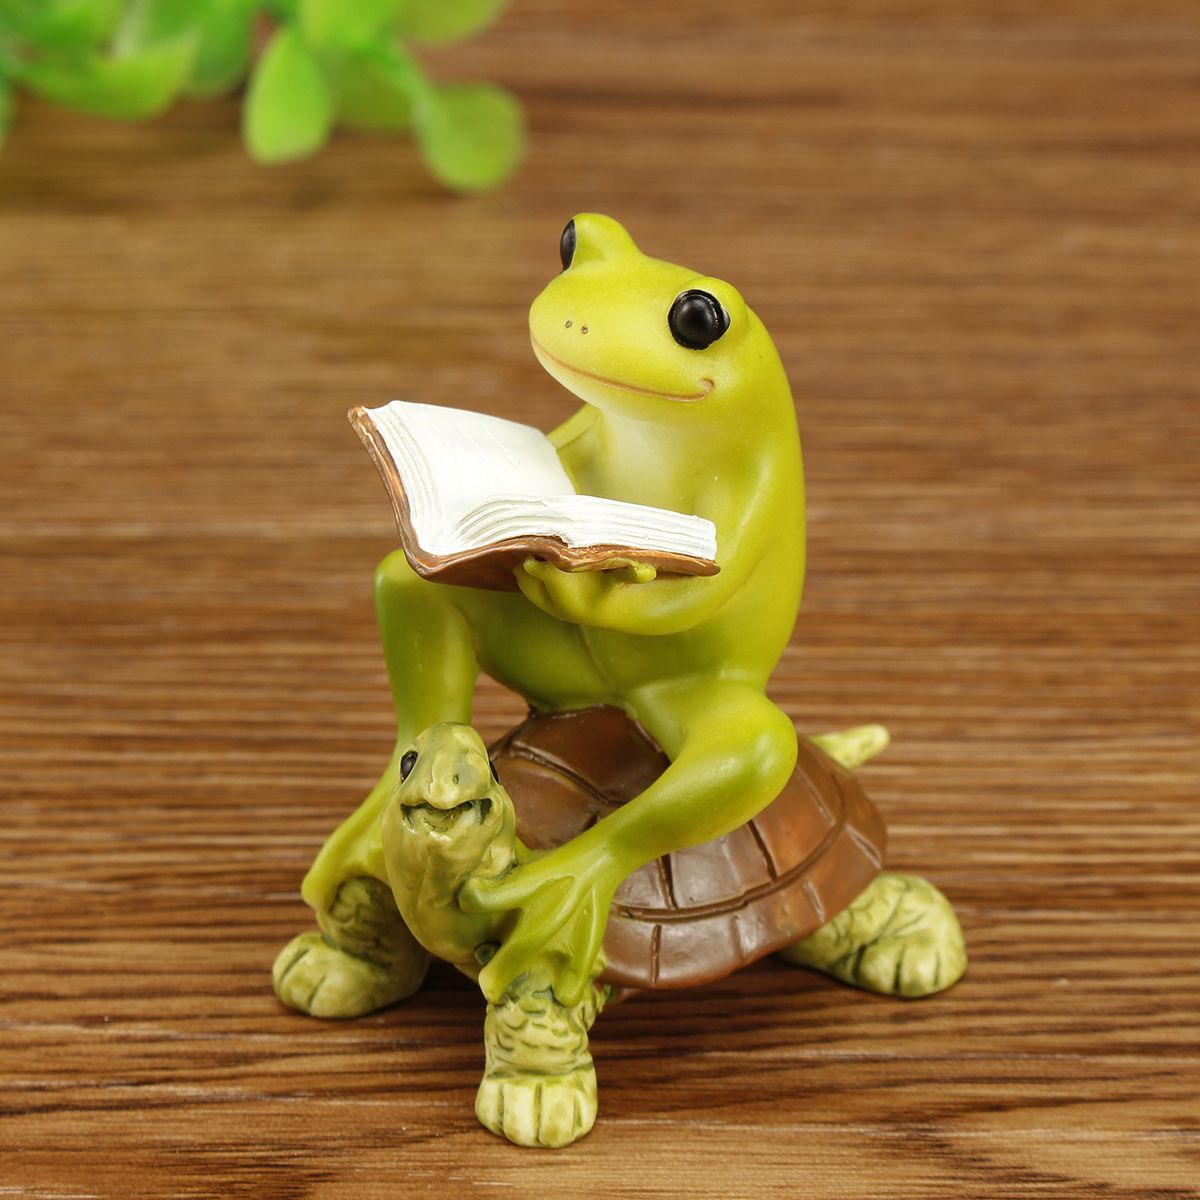 Cute-Frog-Statue-Figurine-Home-Office-Desk-Ornament-Garden-Bonsai-Decor-Gift-1704537